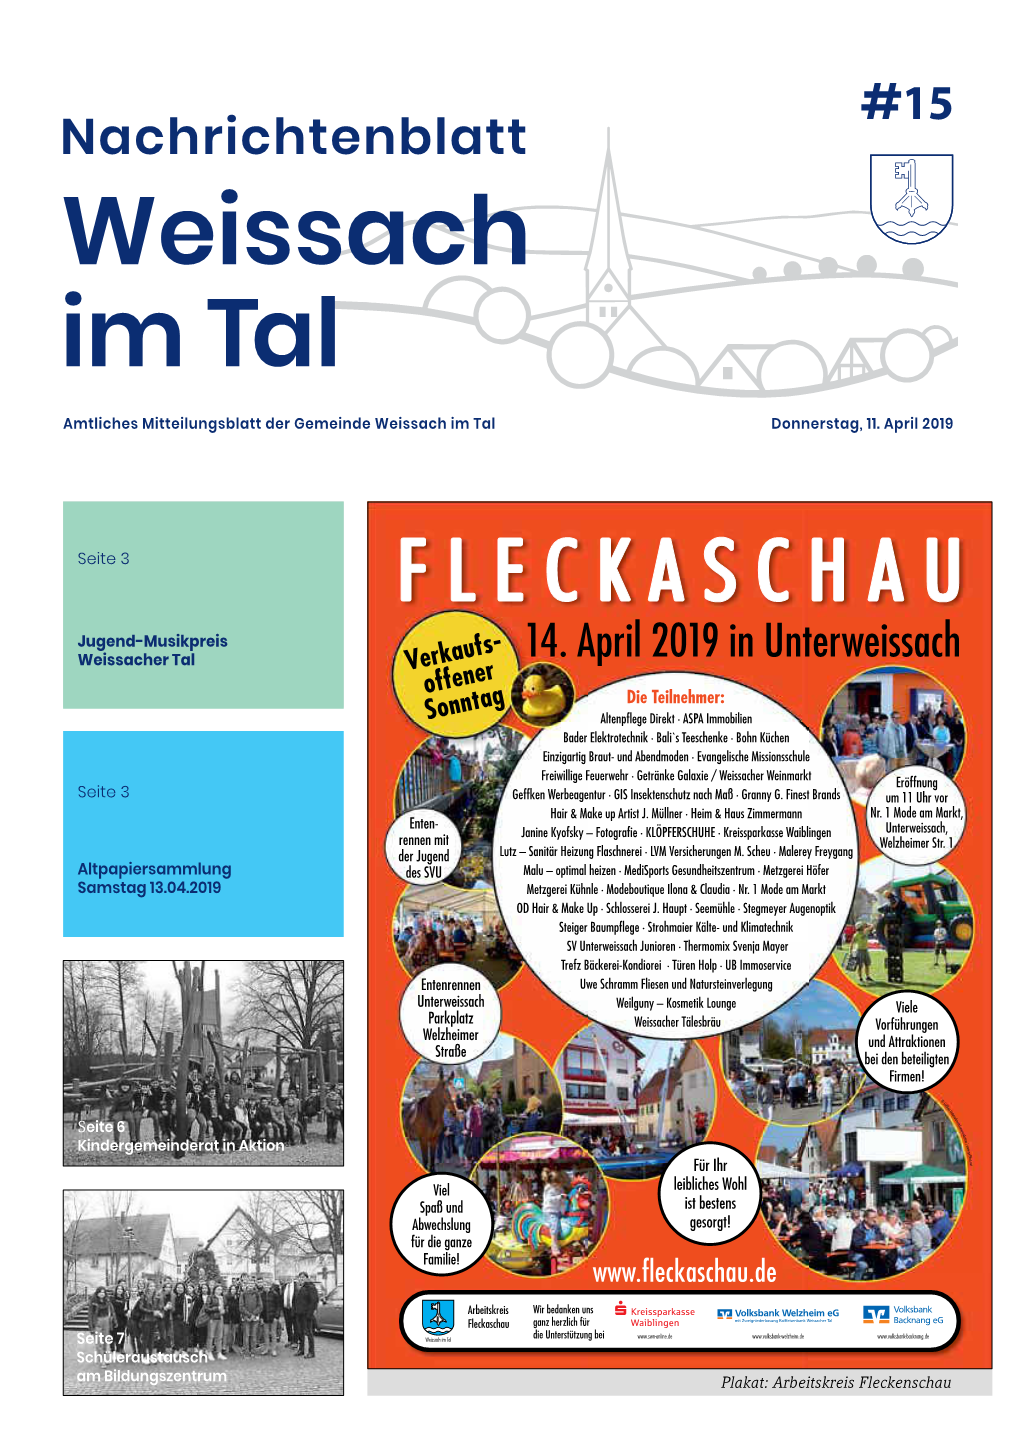 Nachrichtenblatt Weissach Im Tal Amtliches Mitteilungsblatt Der Gemeinde Weissach Im Tal Donnerstag, 11